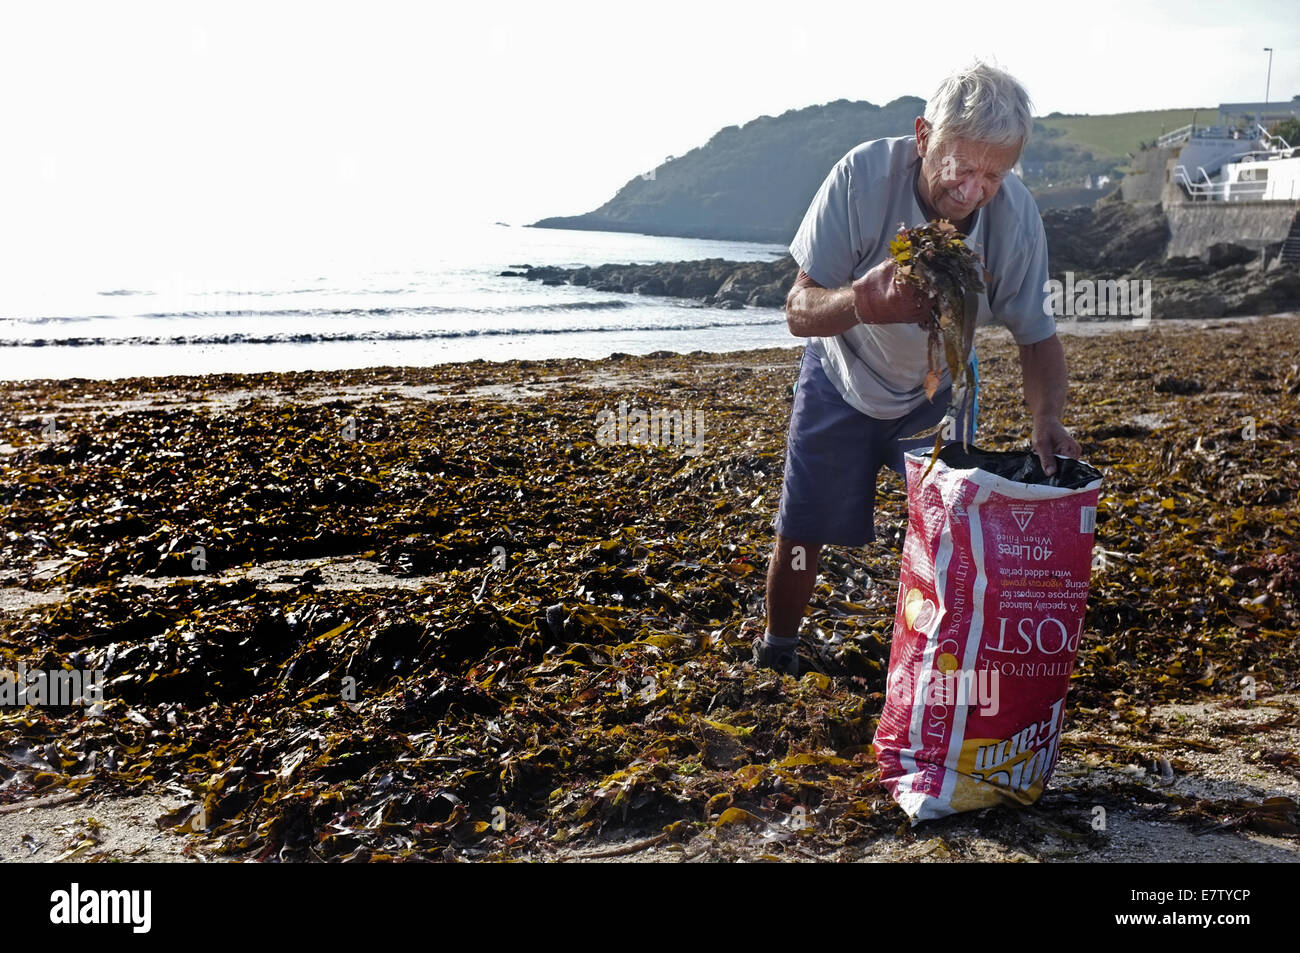 Un homme la collecte des algues pour l'utiliser comme engrais et amendements des sols dans son jardin Banque D'Images